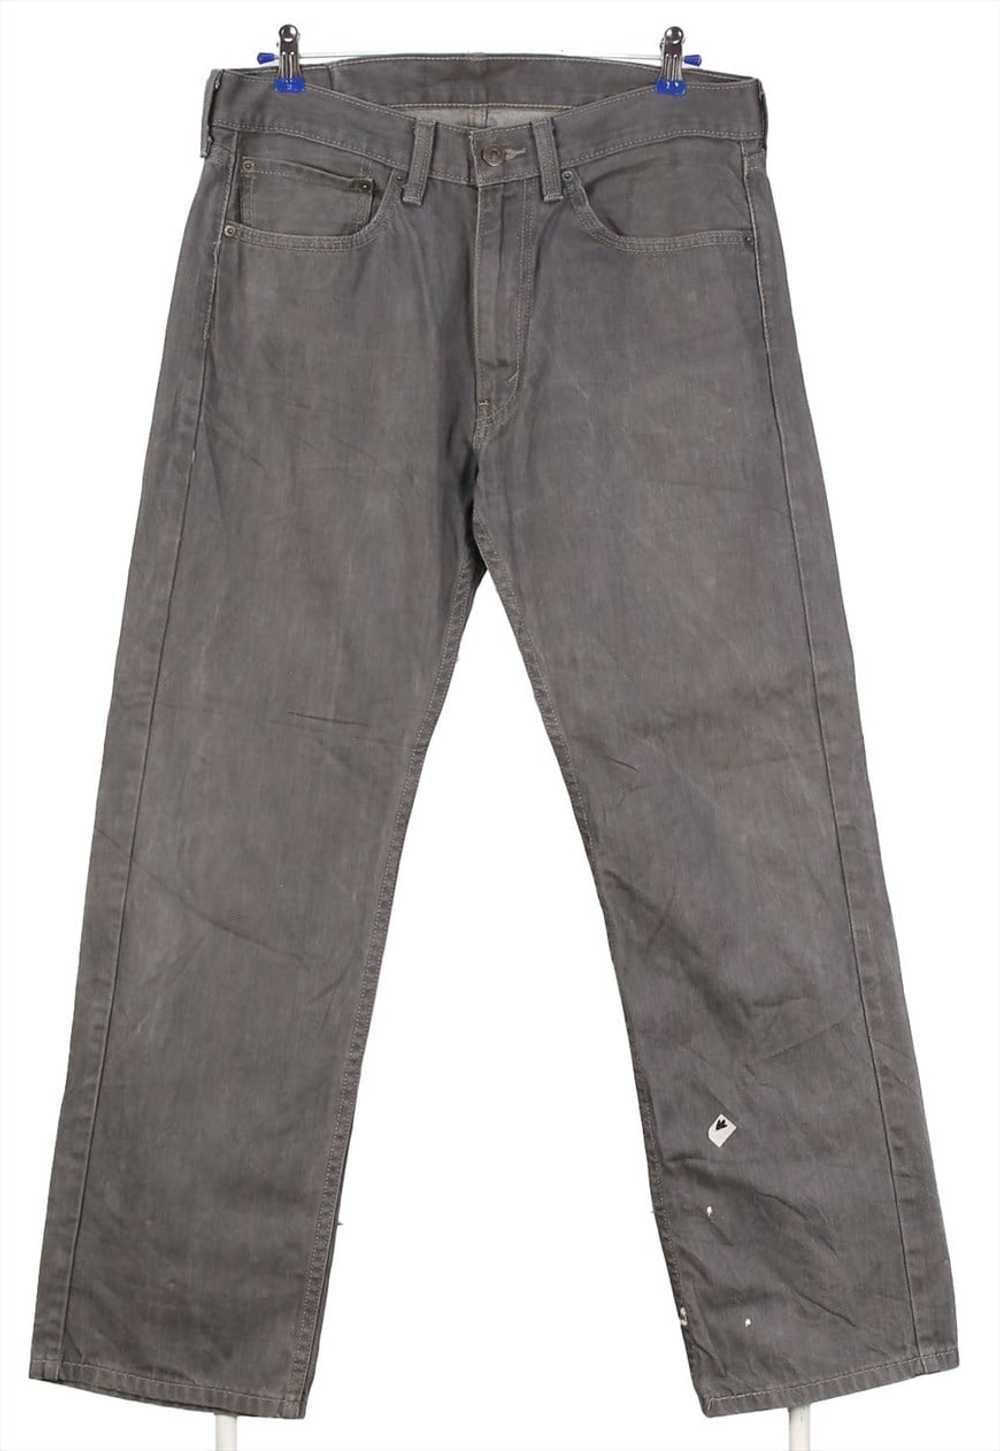 Vintage 90's Levi Strauss & Co. Jeans / Pants Den… - image 2